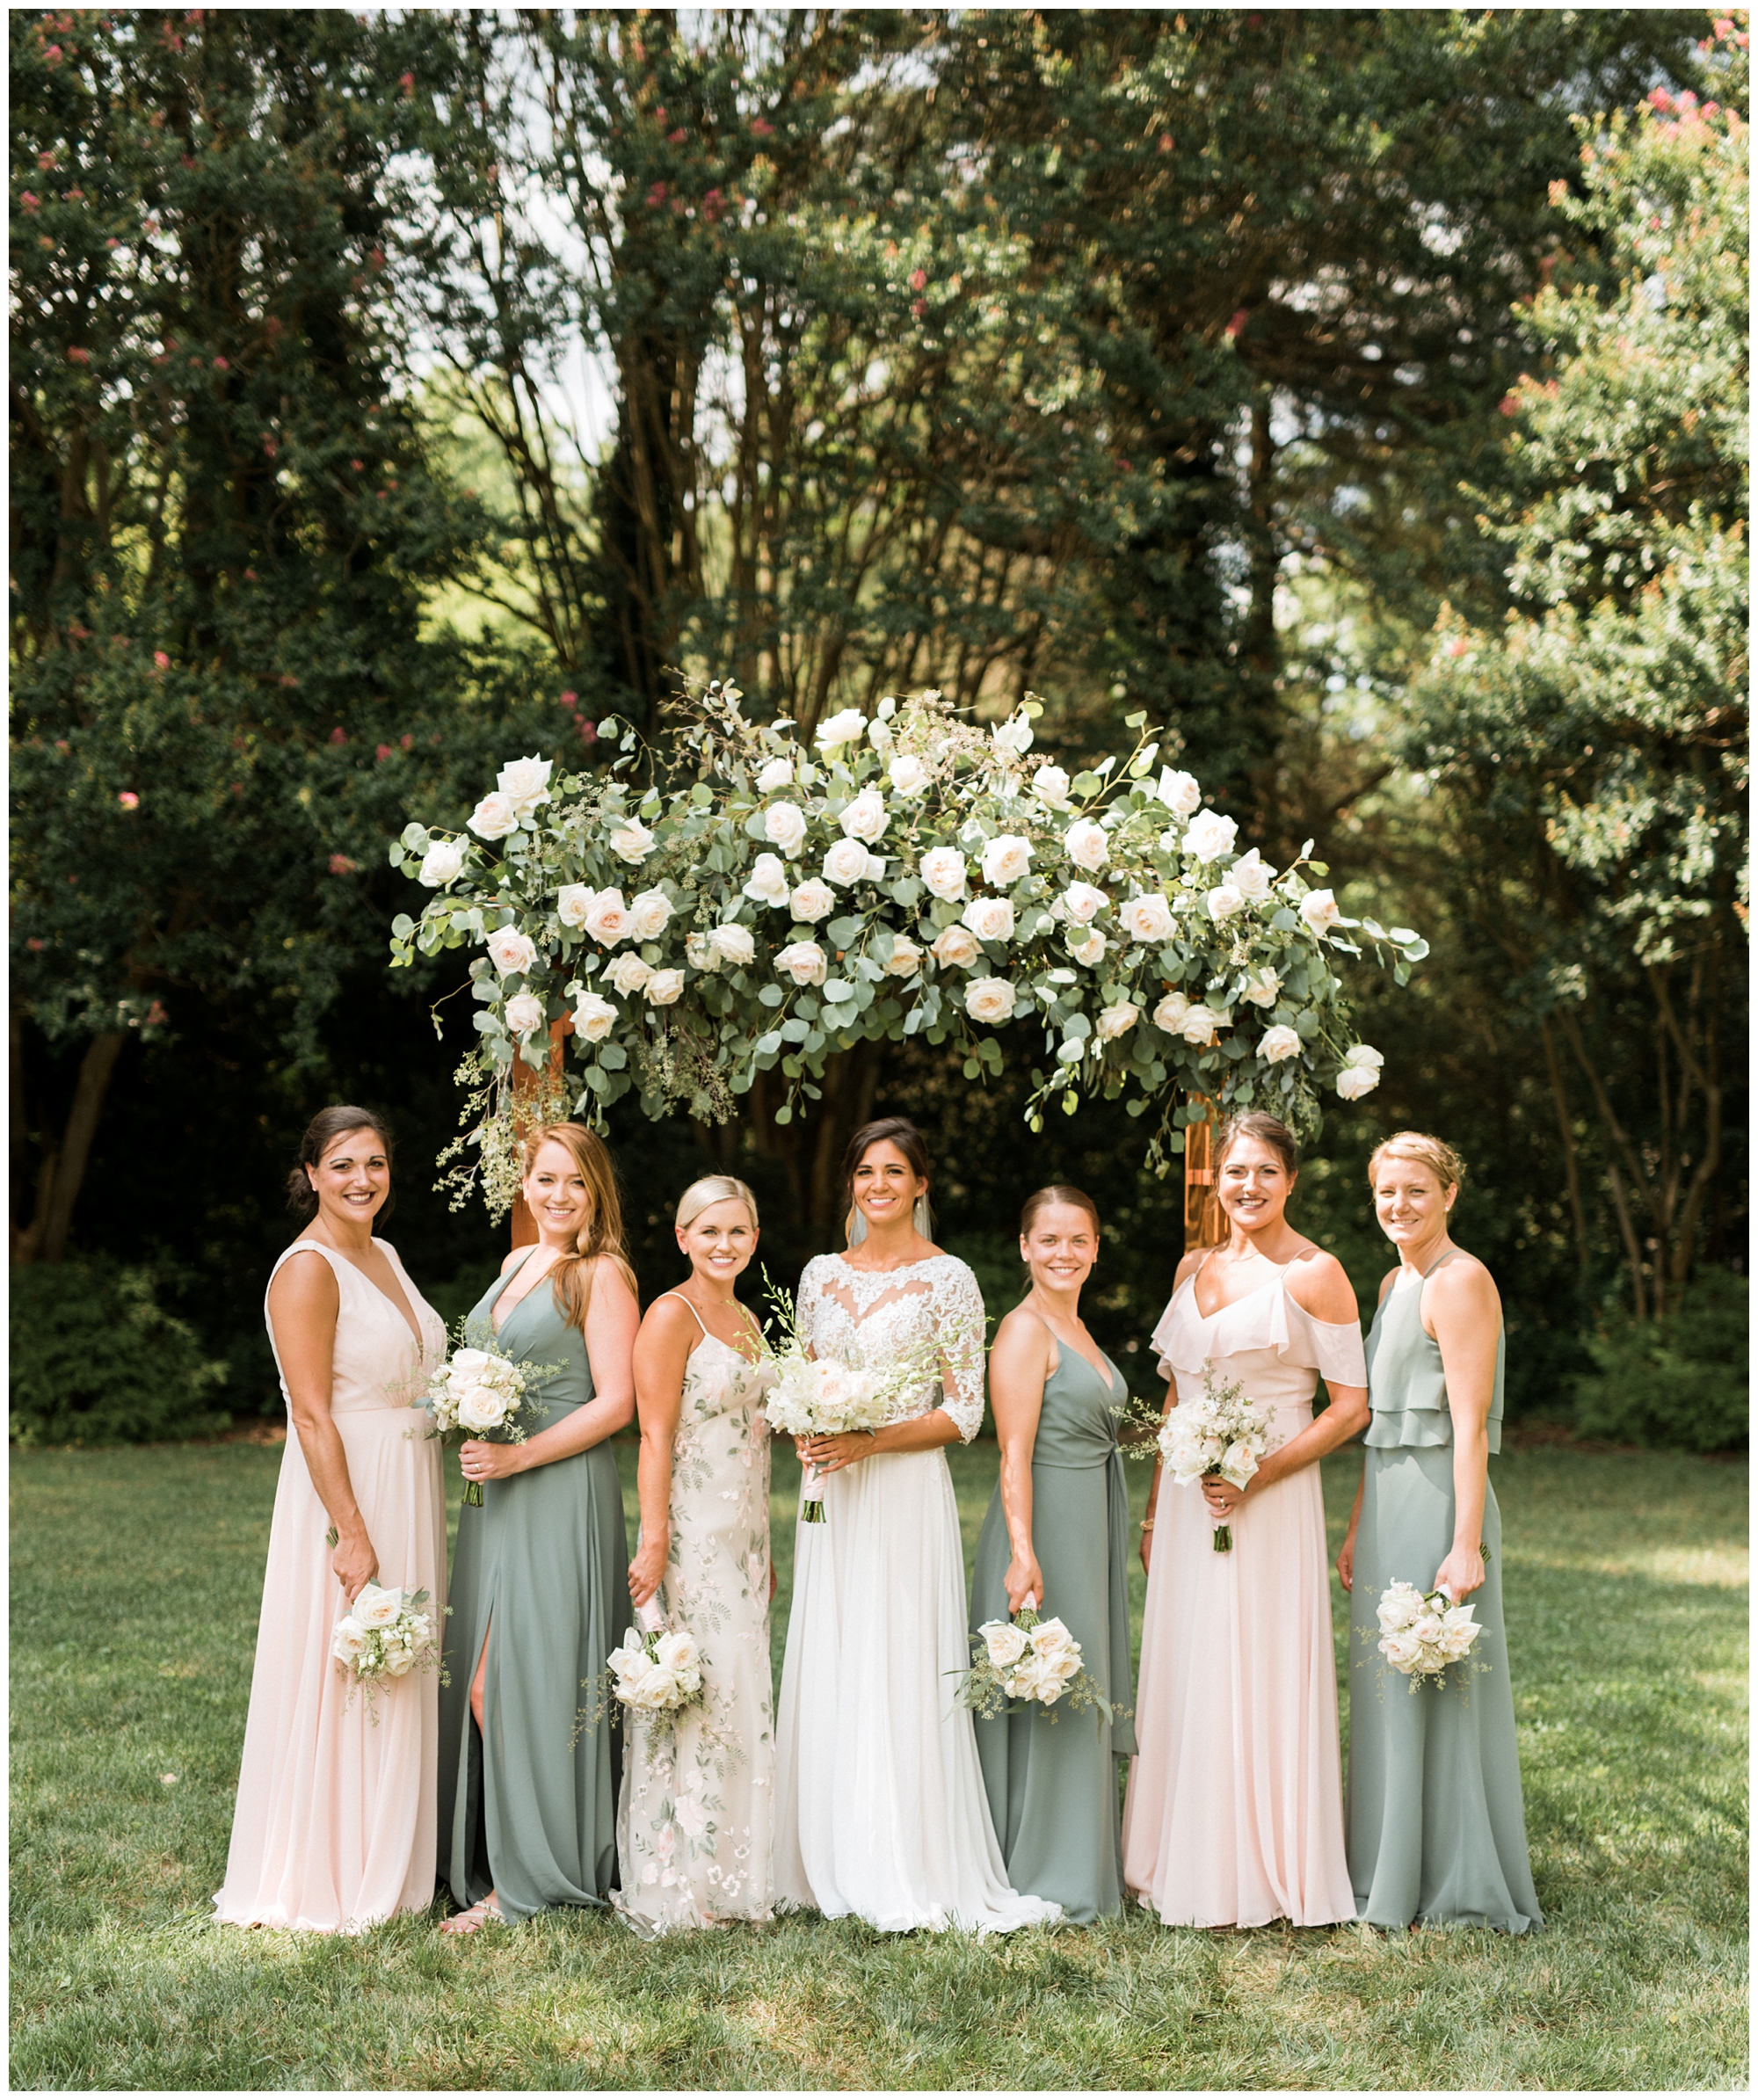 Richmond wedding bridesmaids in sage green dresses